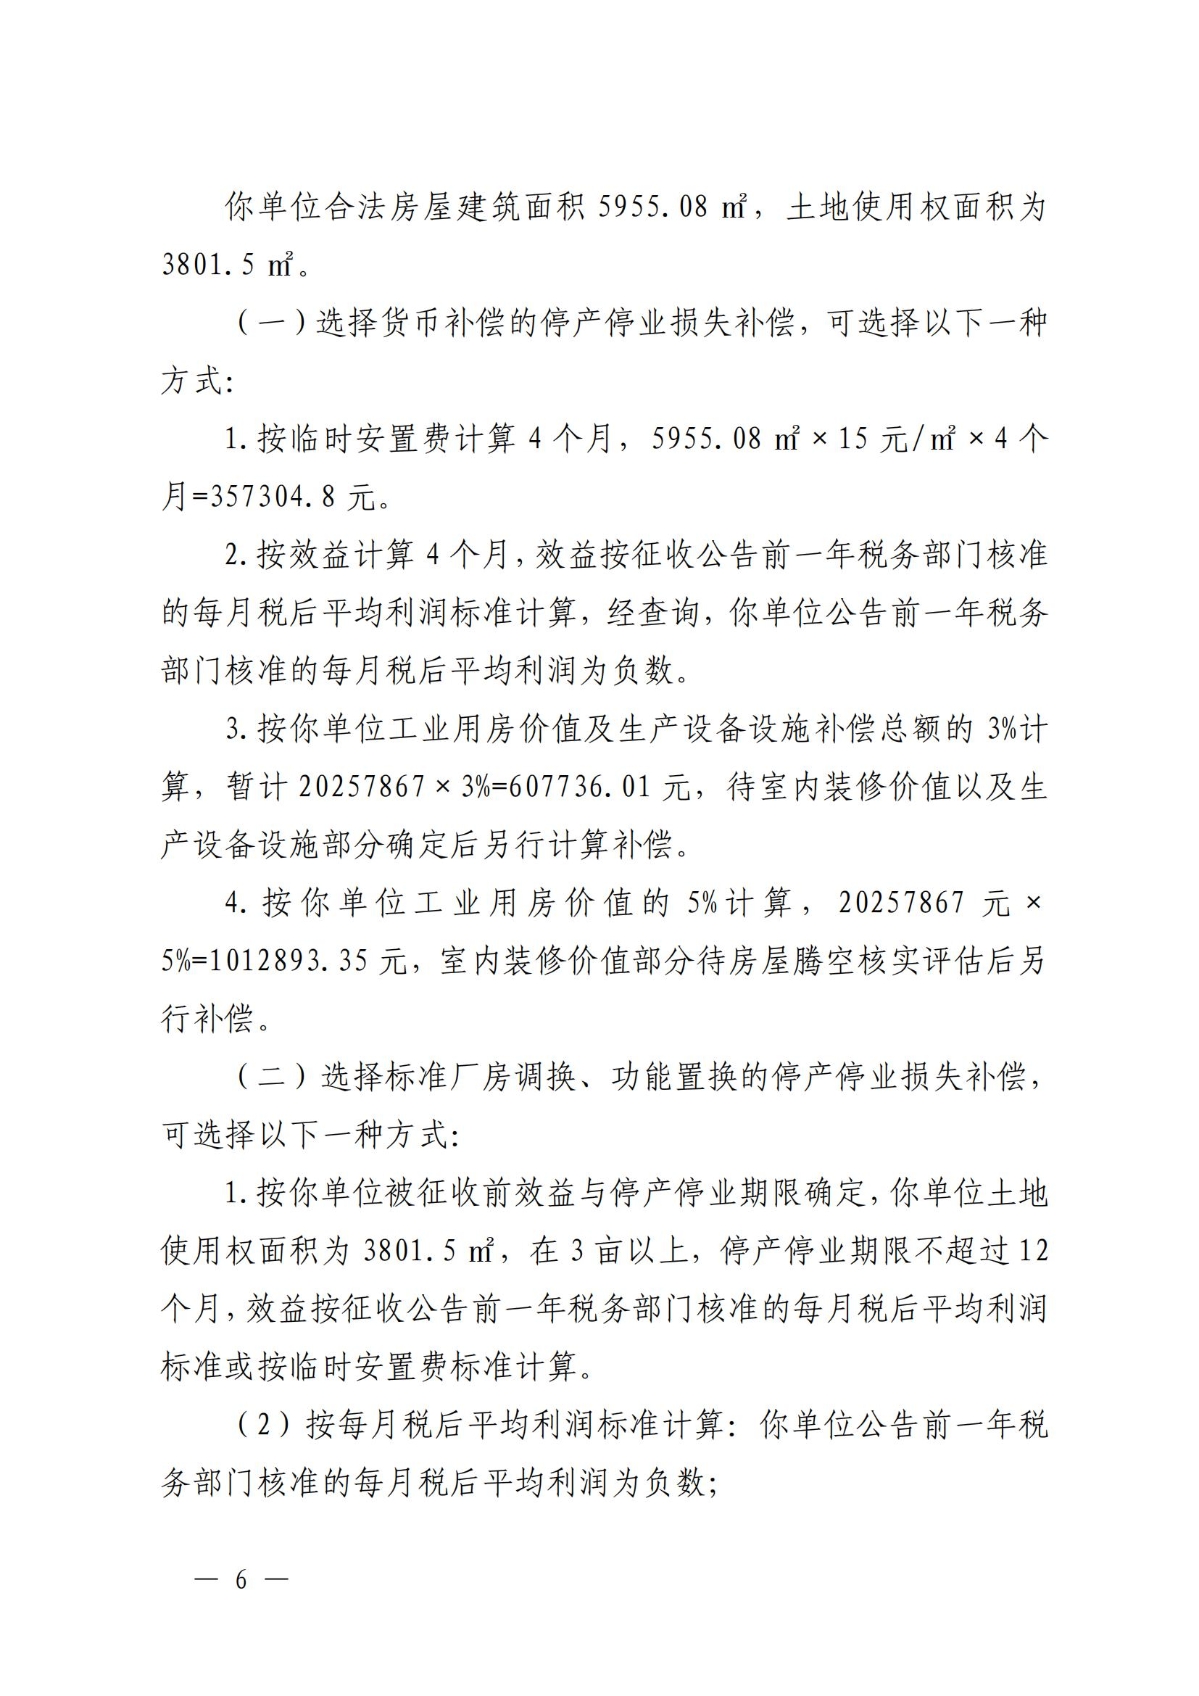 关于对温州市瓯海鹿达包装机械厂房屋的补偿决定方案_05.jpg